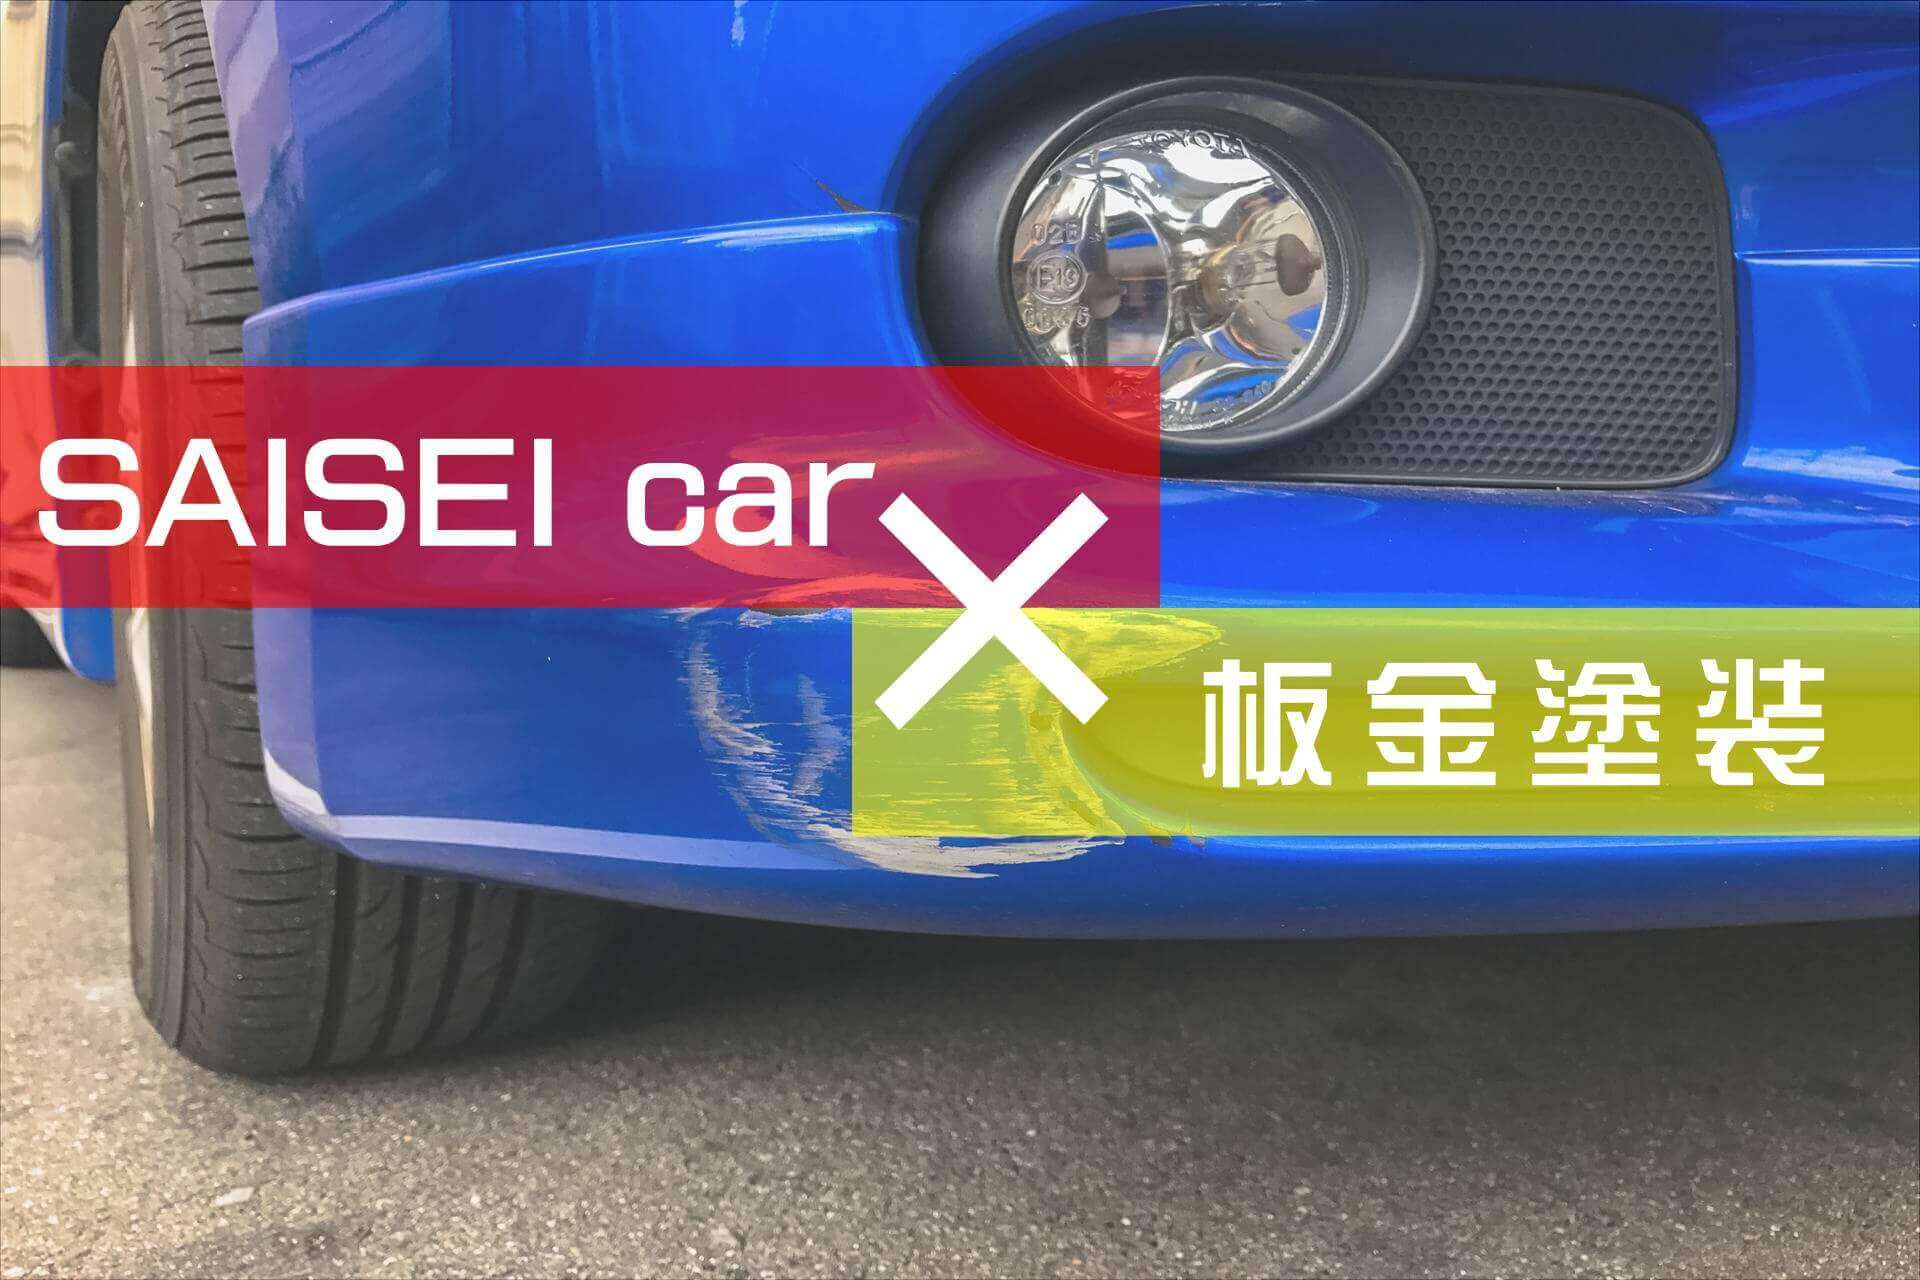 料金案内 福岡市で車のキズ ヘコミ修理の板金塗装が必要とする修理の際は サイセイ自動車 にお任せください